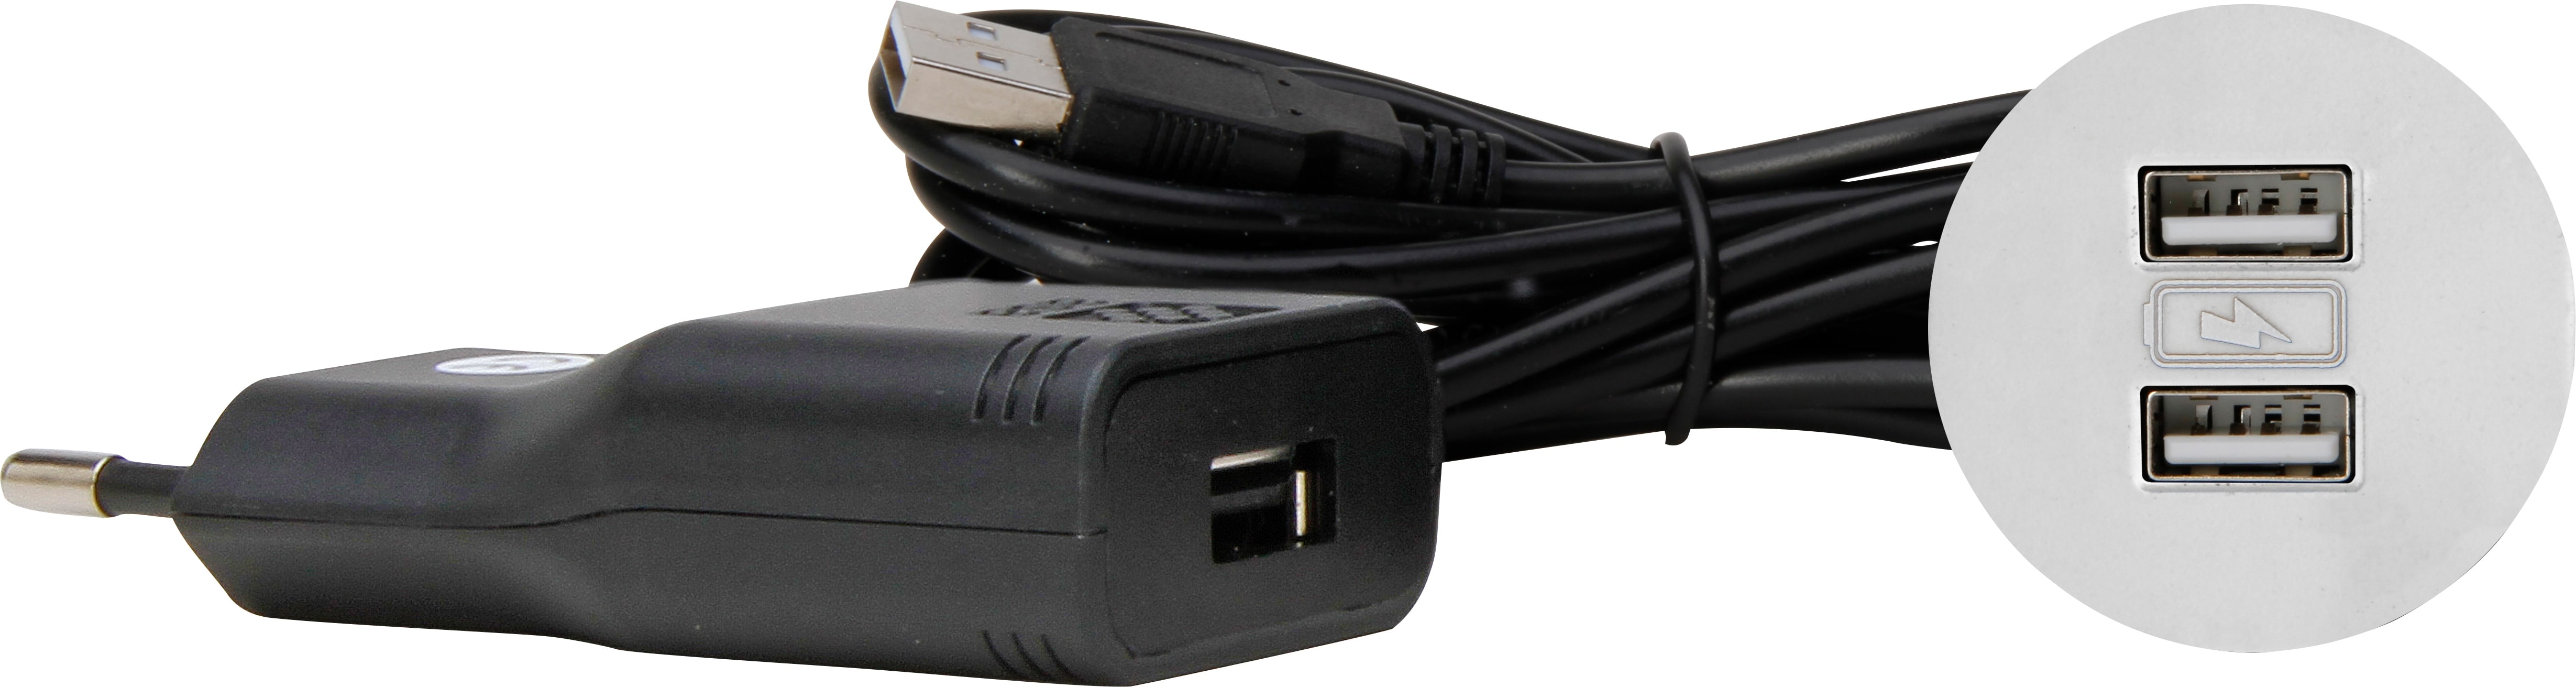 Kopp 939720019 VersaPICK USB Einbauset mit 2x USB, rund, weiß Kunststoff